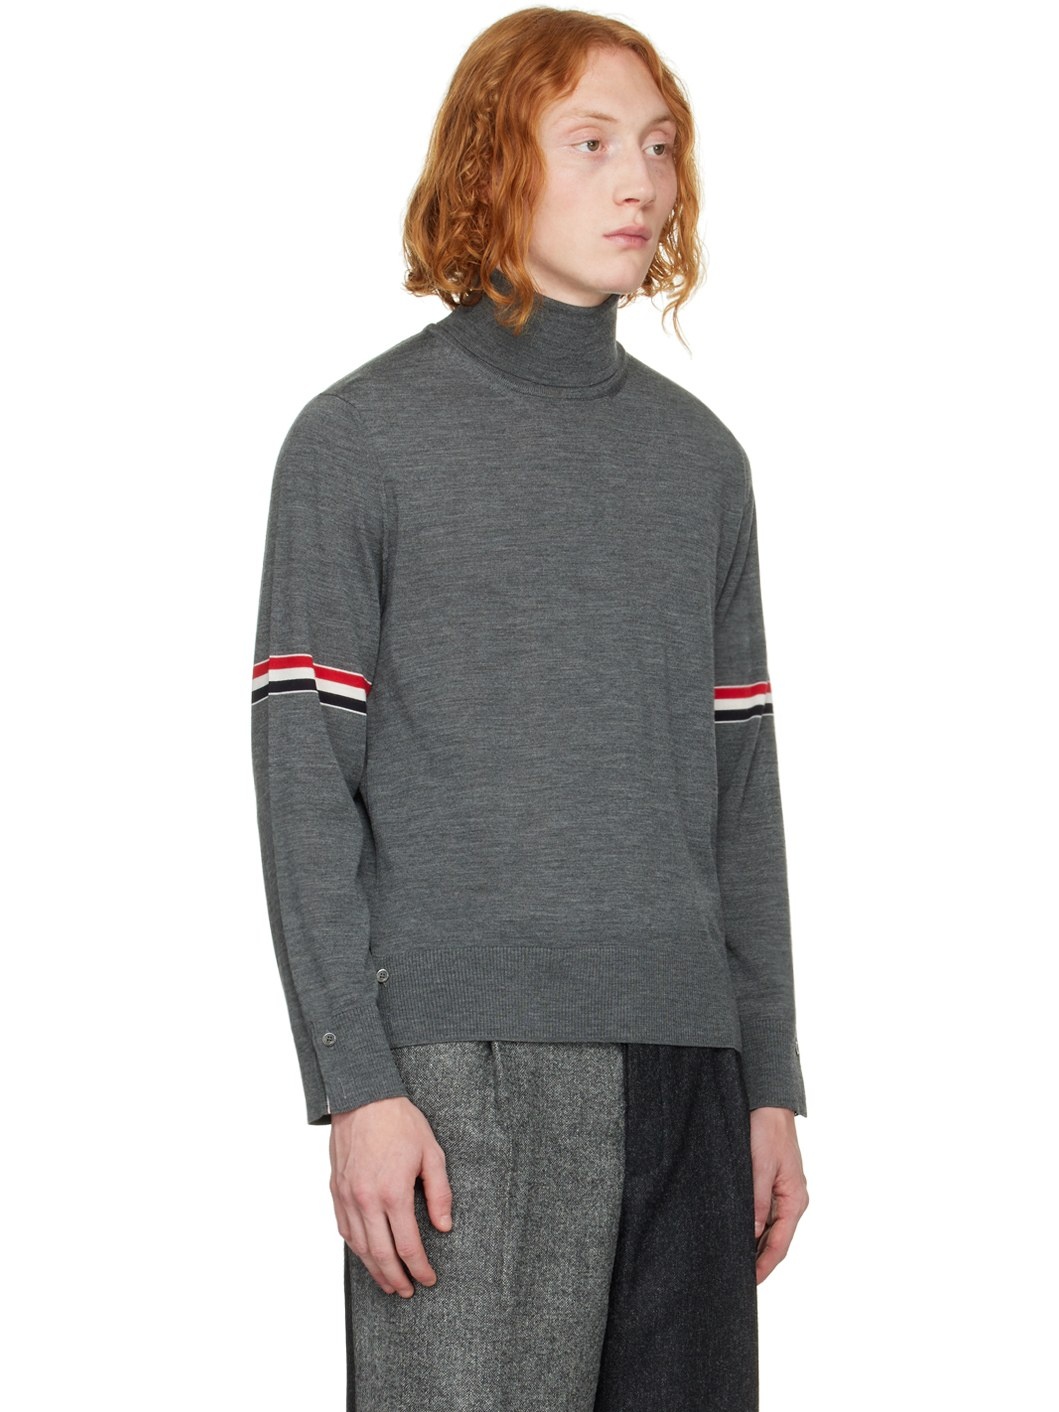 Gray Armband Sweater - 2